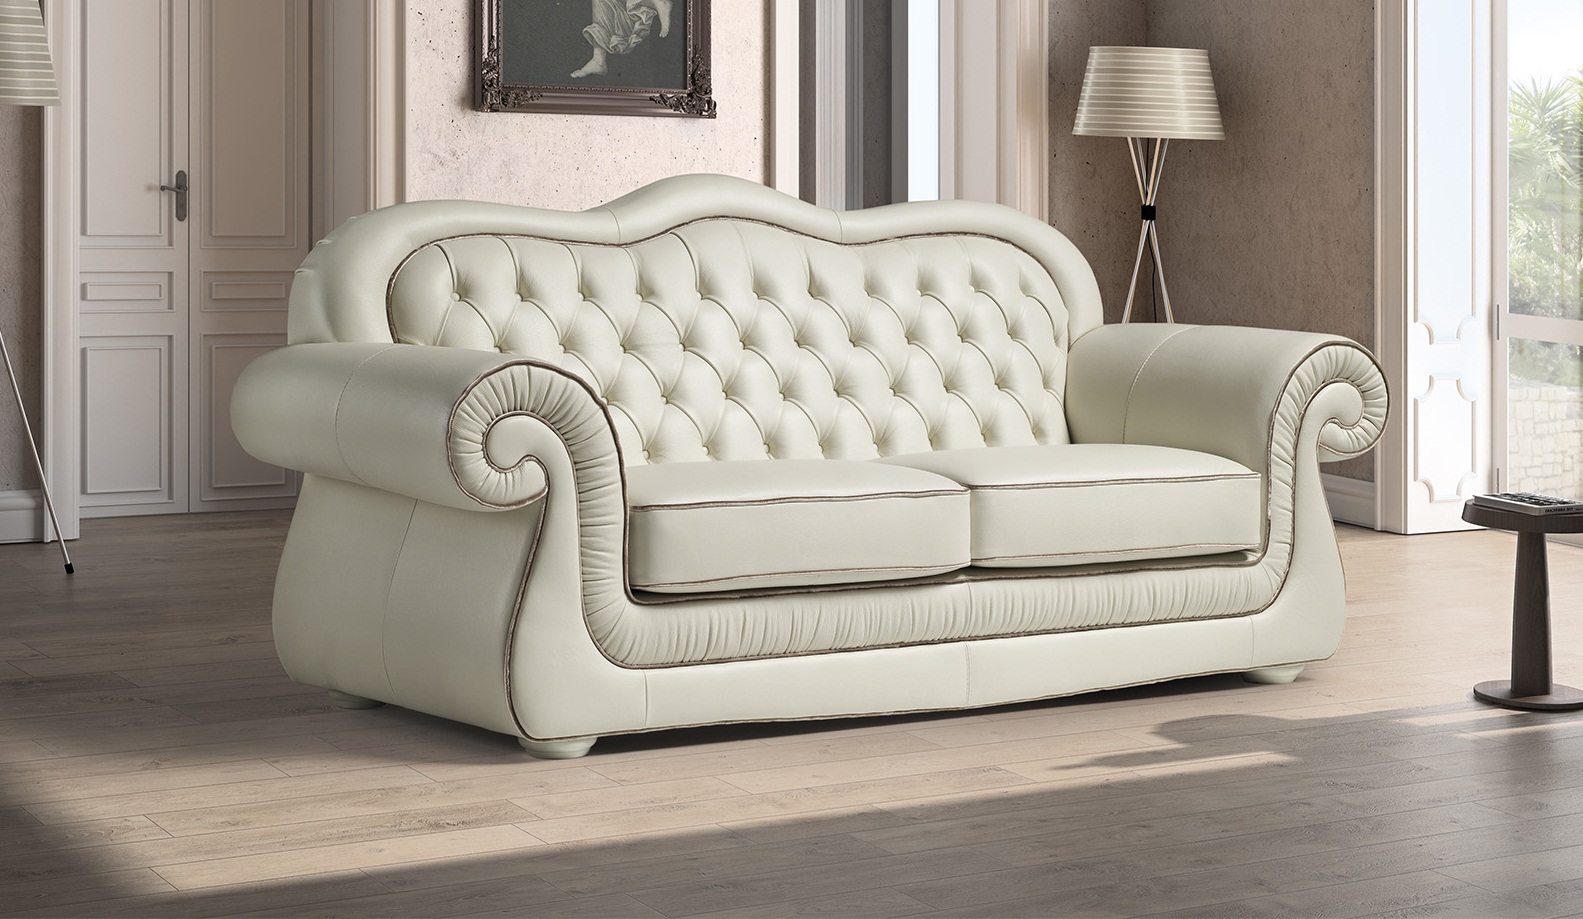 15+ mẫu sofa nhập khẩu cho phòng khách đẹp hút hồn - Ảnh 2